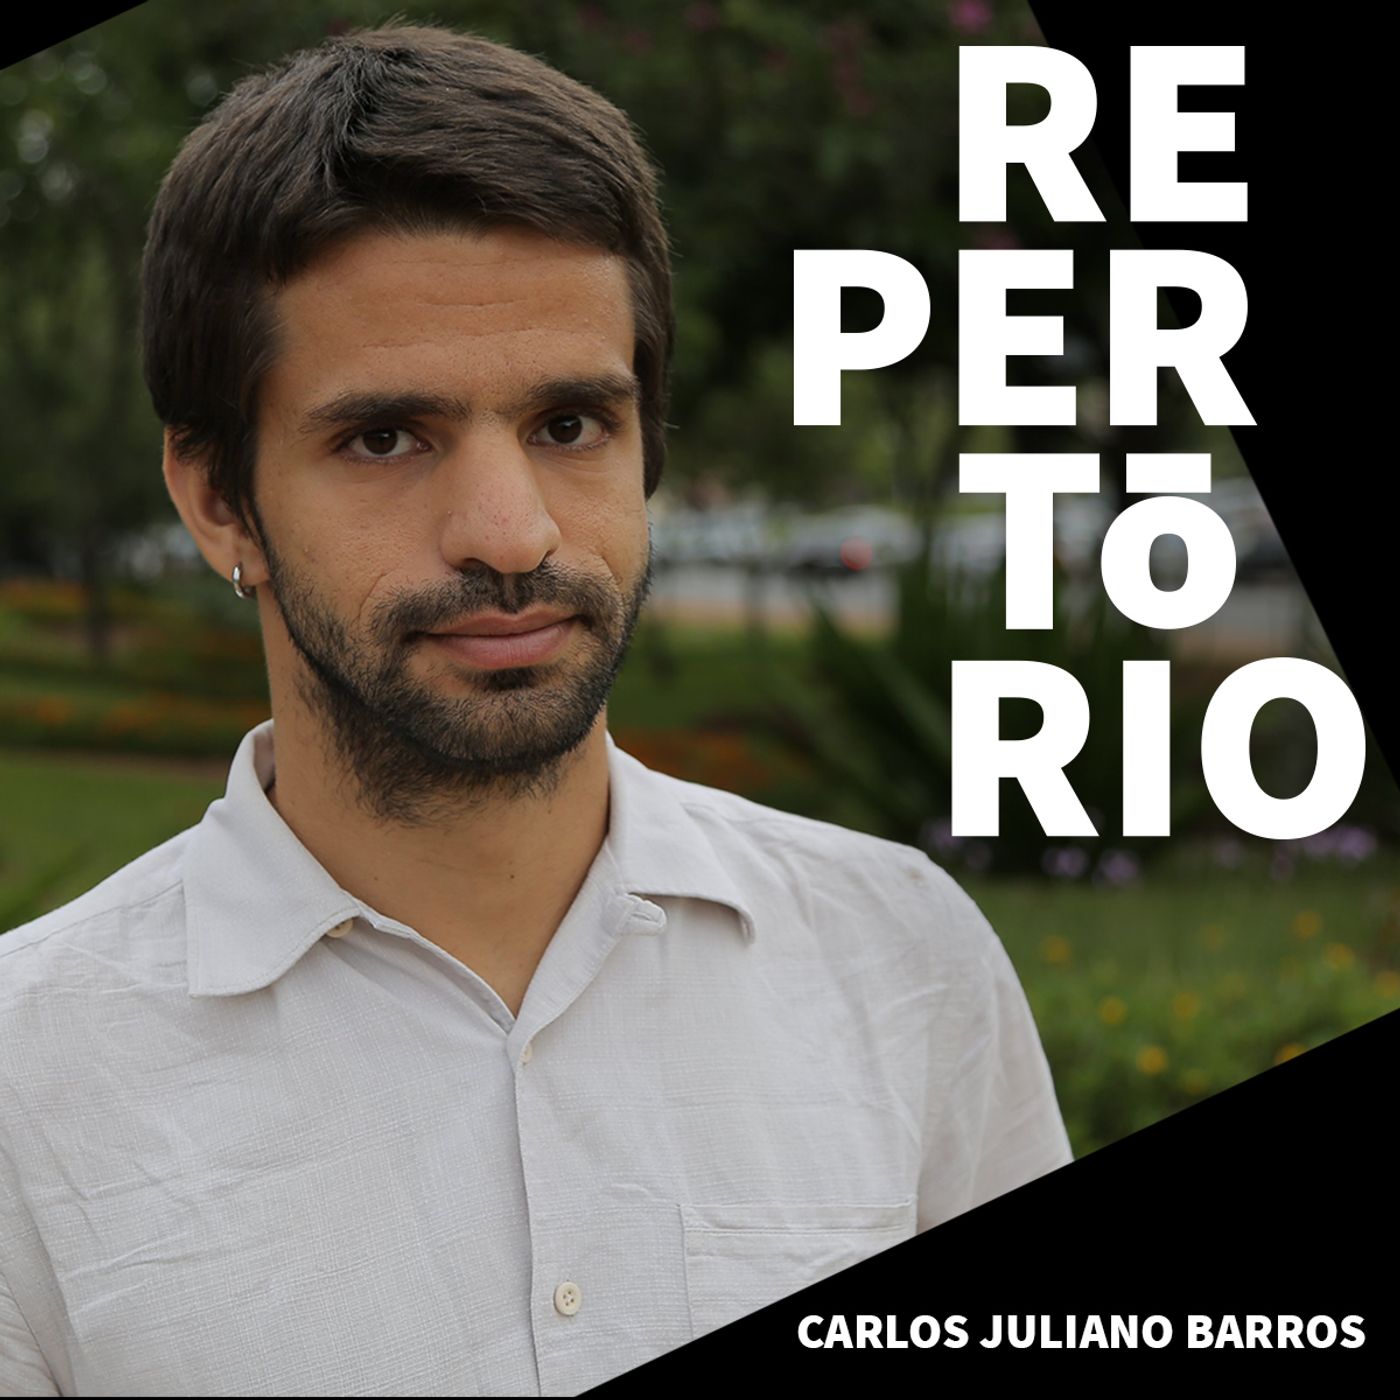 Repertório #32 Carlos Juliano Barros